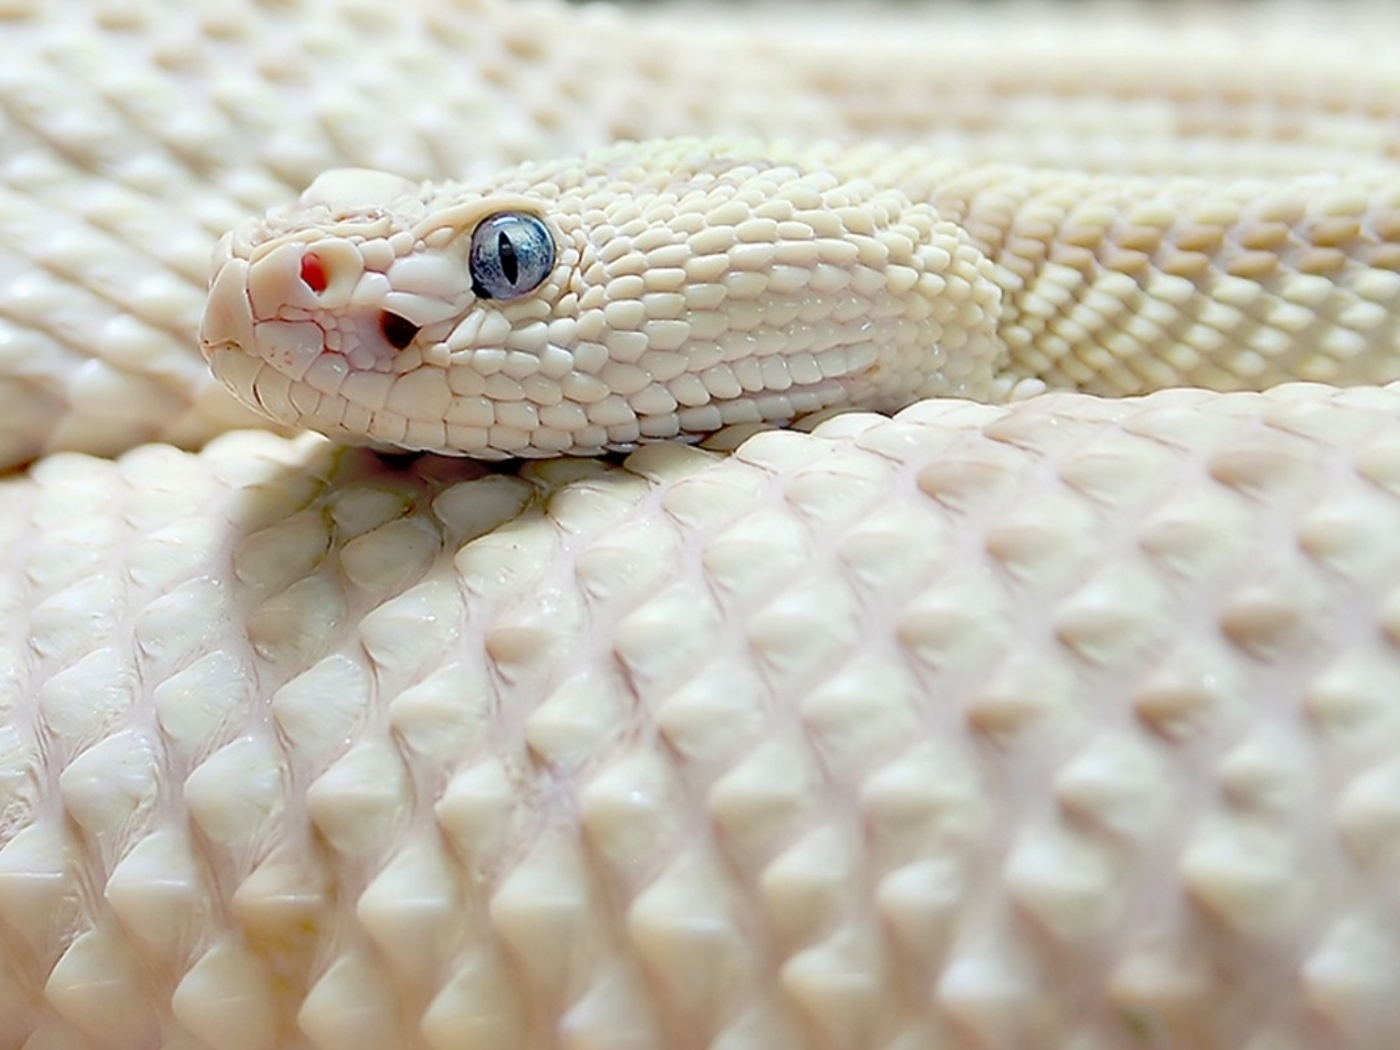 Картинка: Змея, кожа, чешуя, глаза, белая